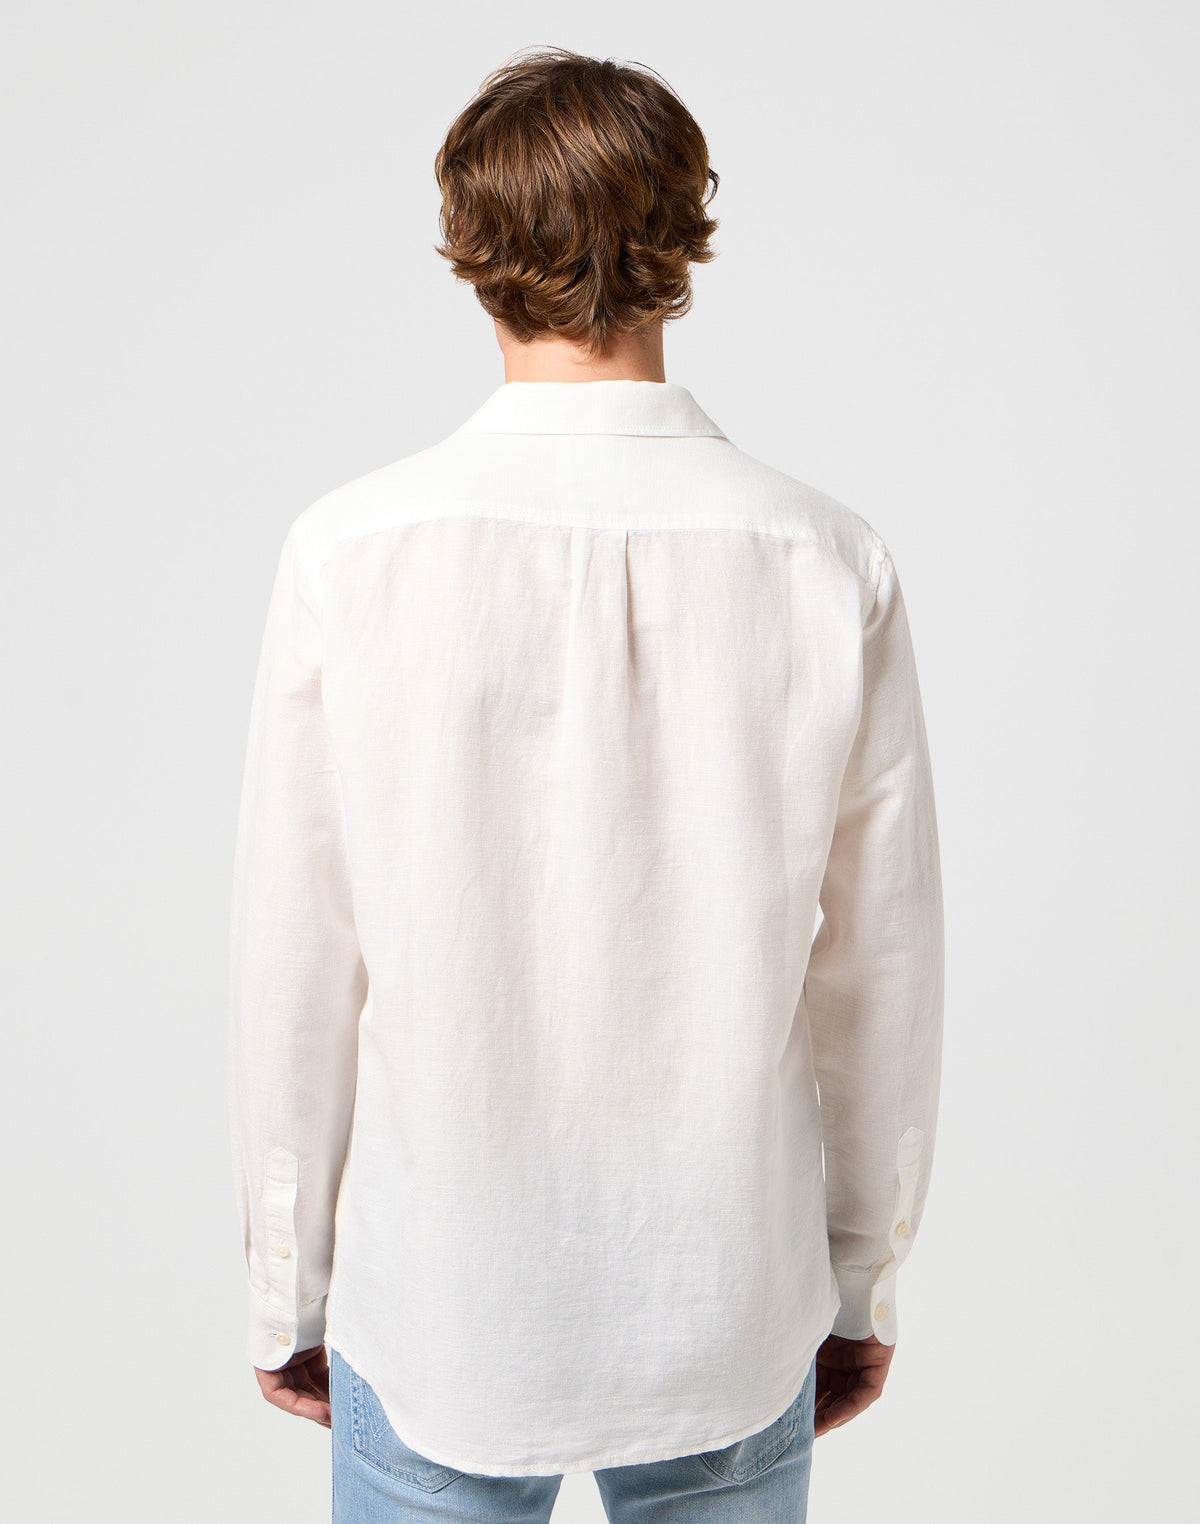 One Pocket Shirt in Worn White